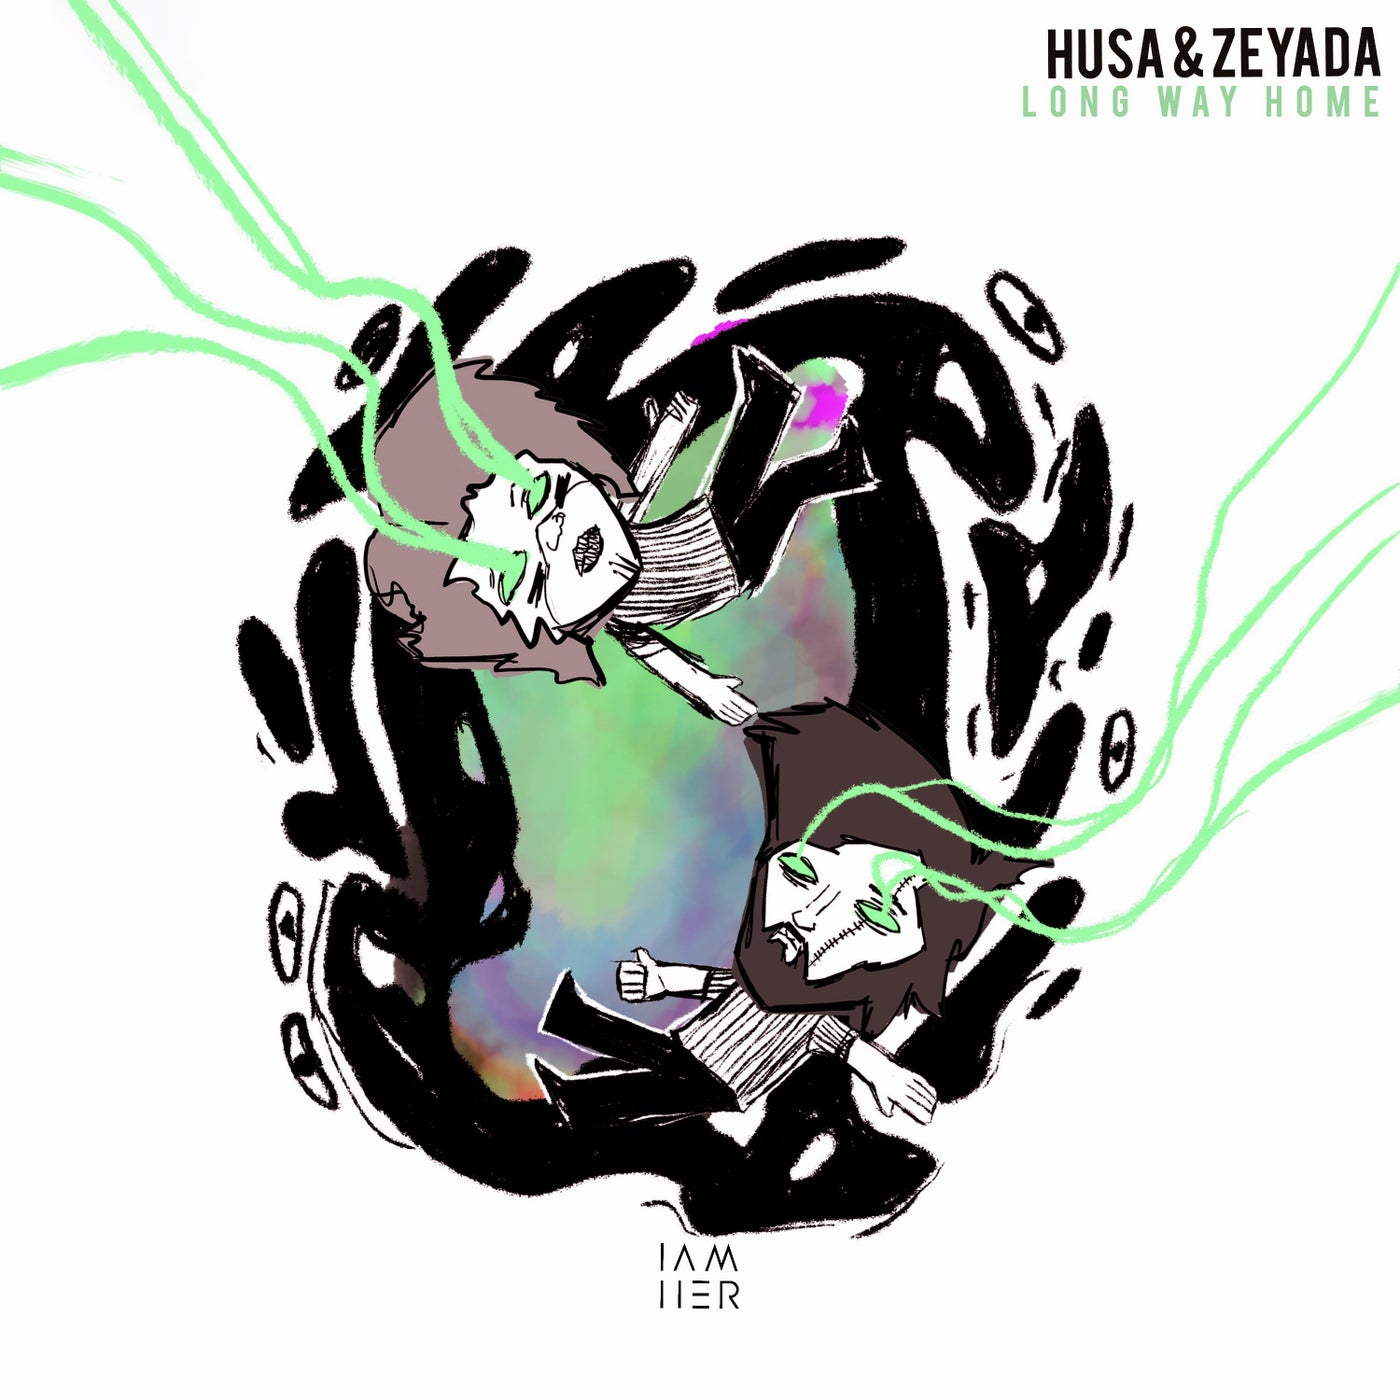 Husa & Zeyada – Long Way Home [IAMHERX043]